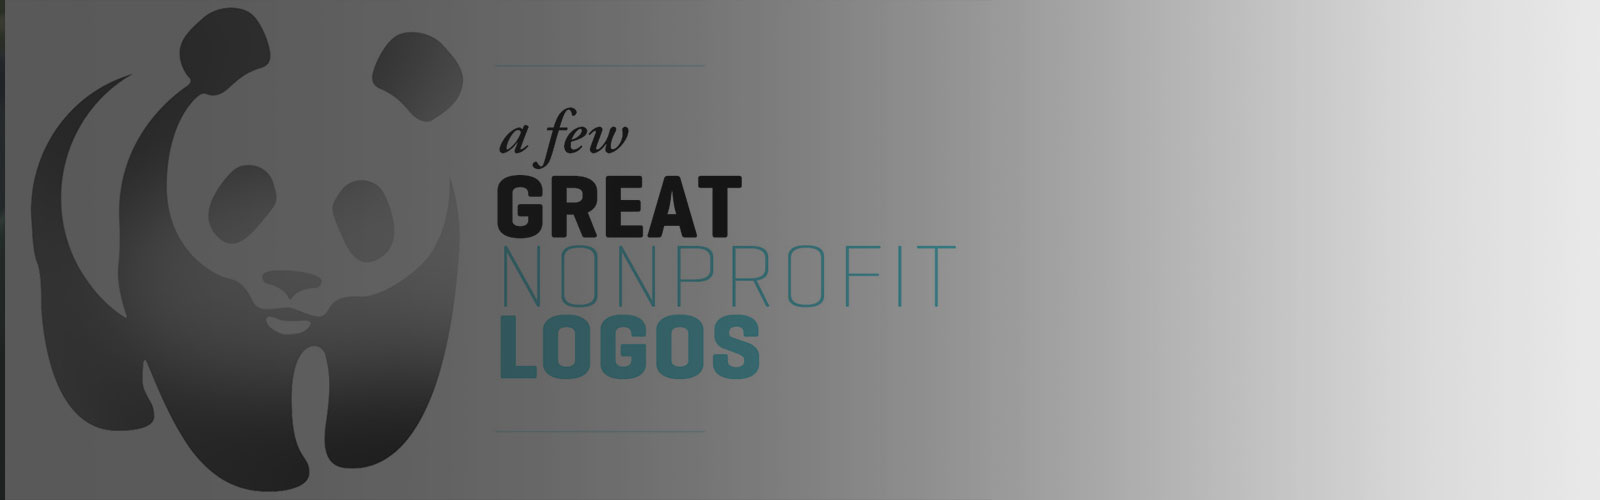 https://www.mittun.com/wp-content/uploads/2014/11/best-nonprofit-logos-2014-1-by-mitten-united-graphic-design-hero.jpg